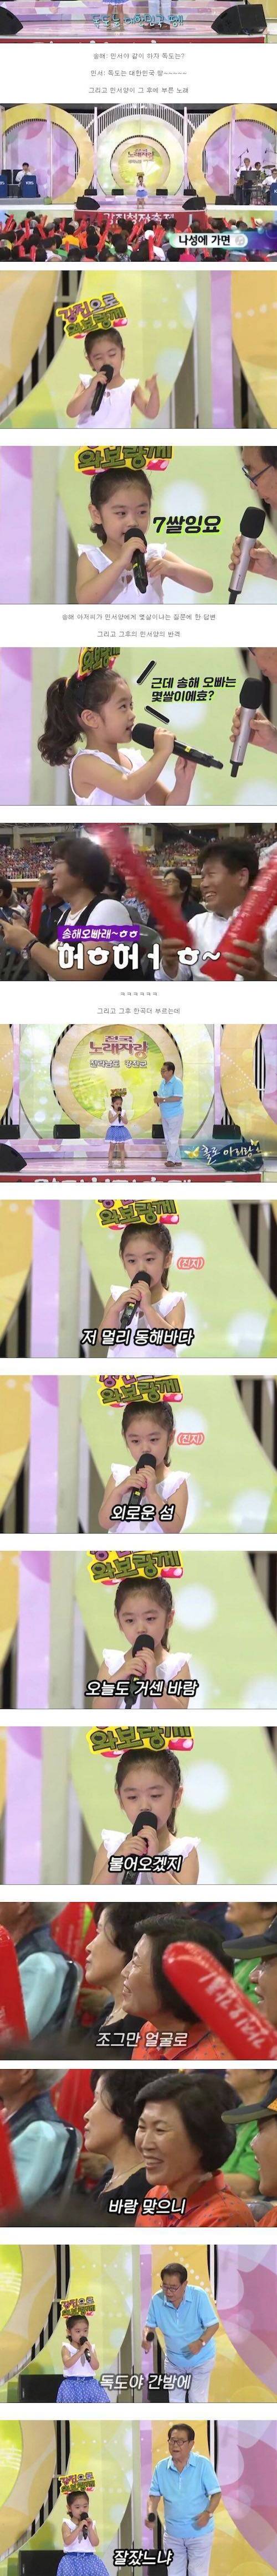 [스압] 전국노래자랑 똘똘한 7살 소녀